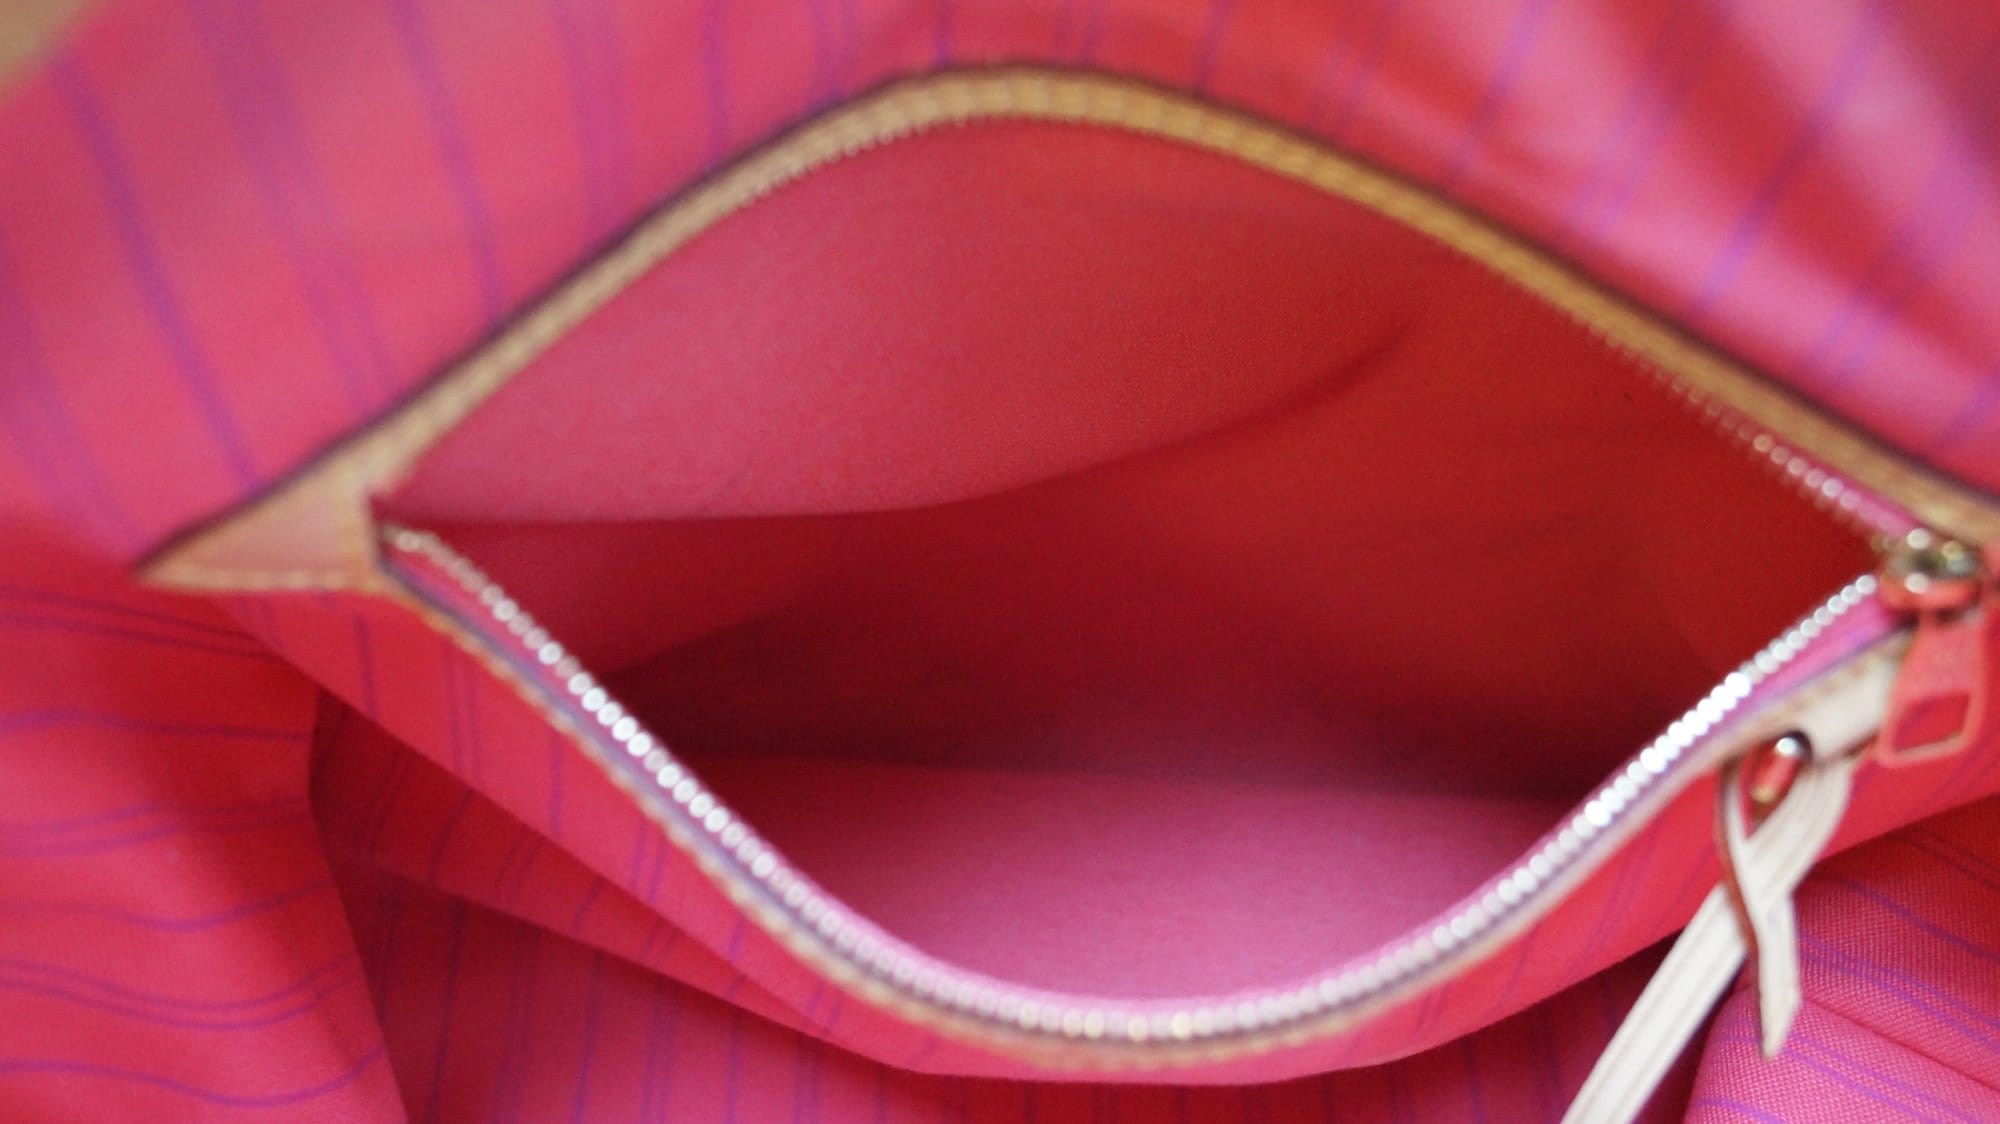 LOUIS VUITTON Delightful MM NM Damier Azur Pink Hobo Shoulder Bag